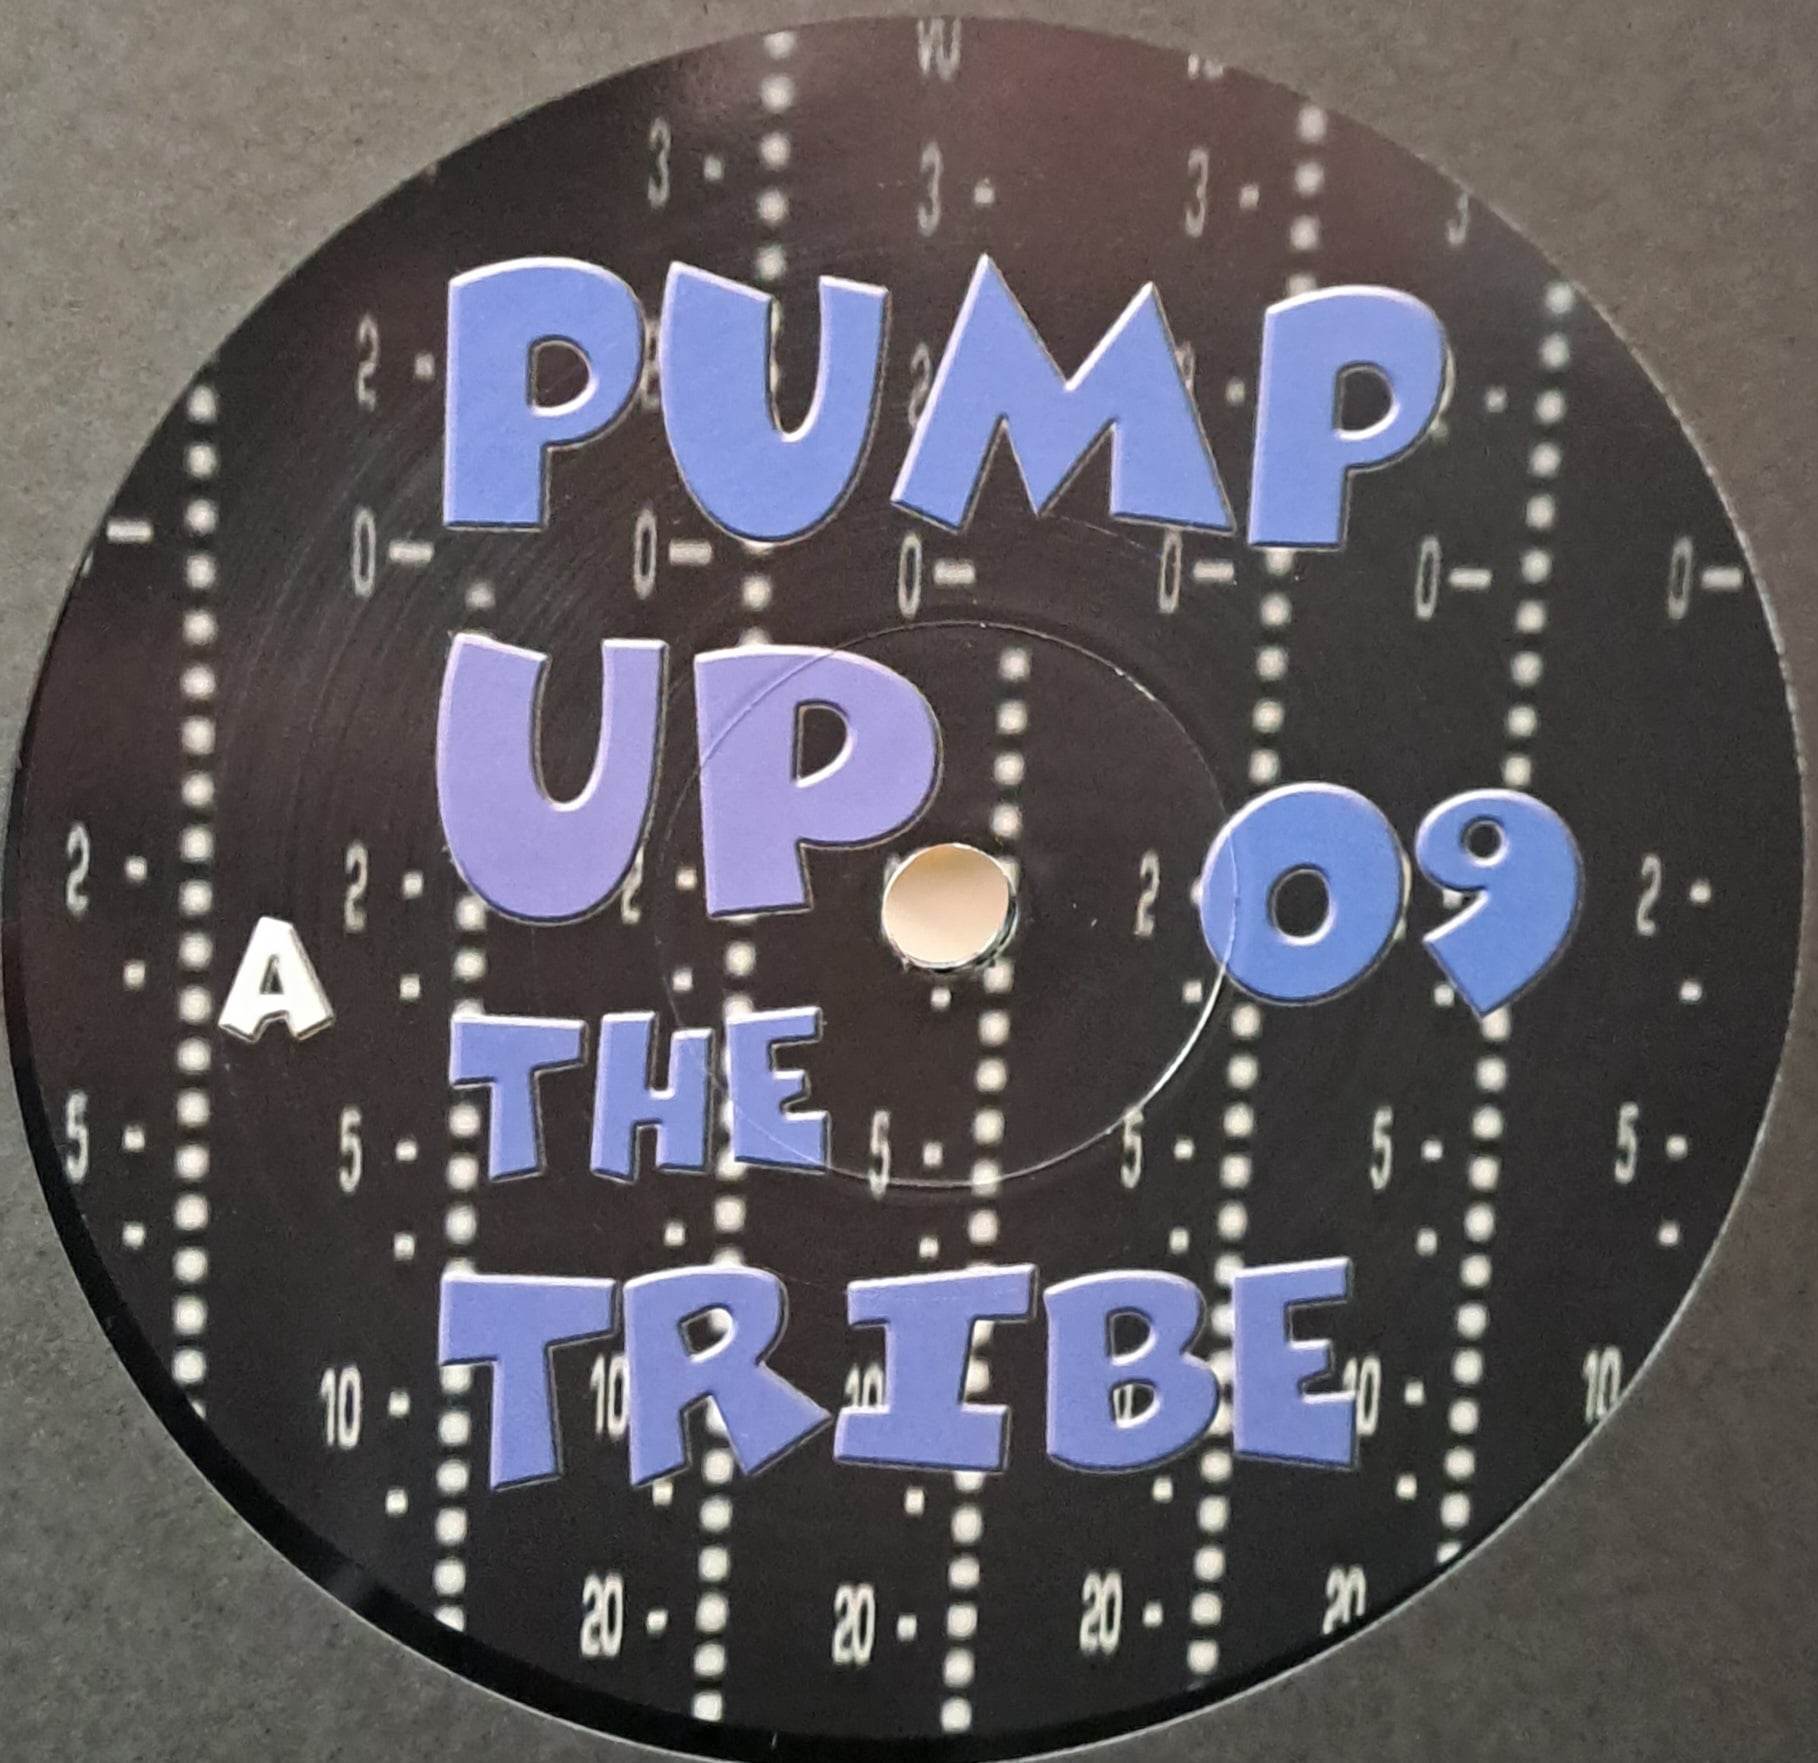 Pump Up The Tribe 09 (dernières copies en stock) - vinyle freetekno